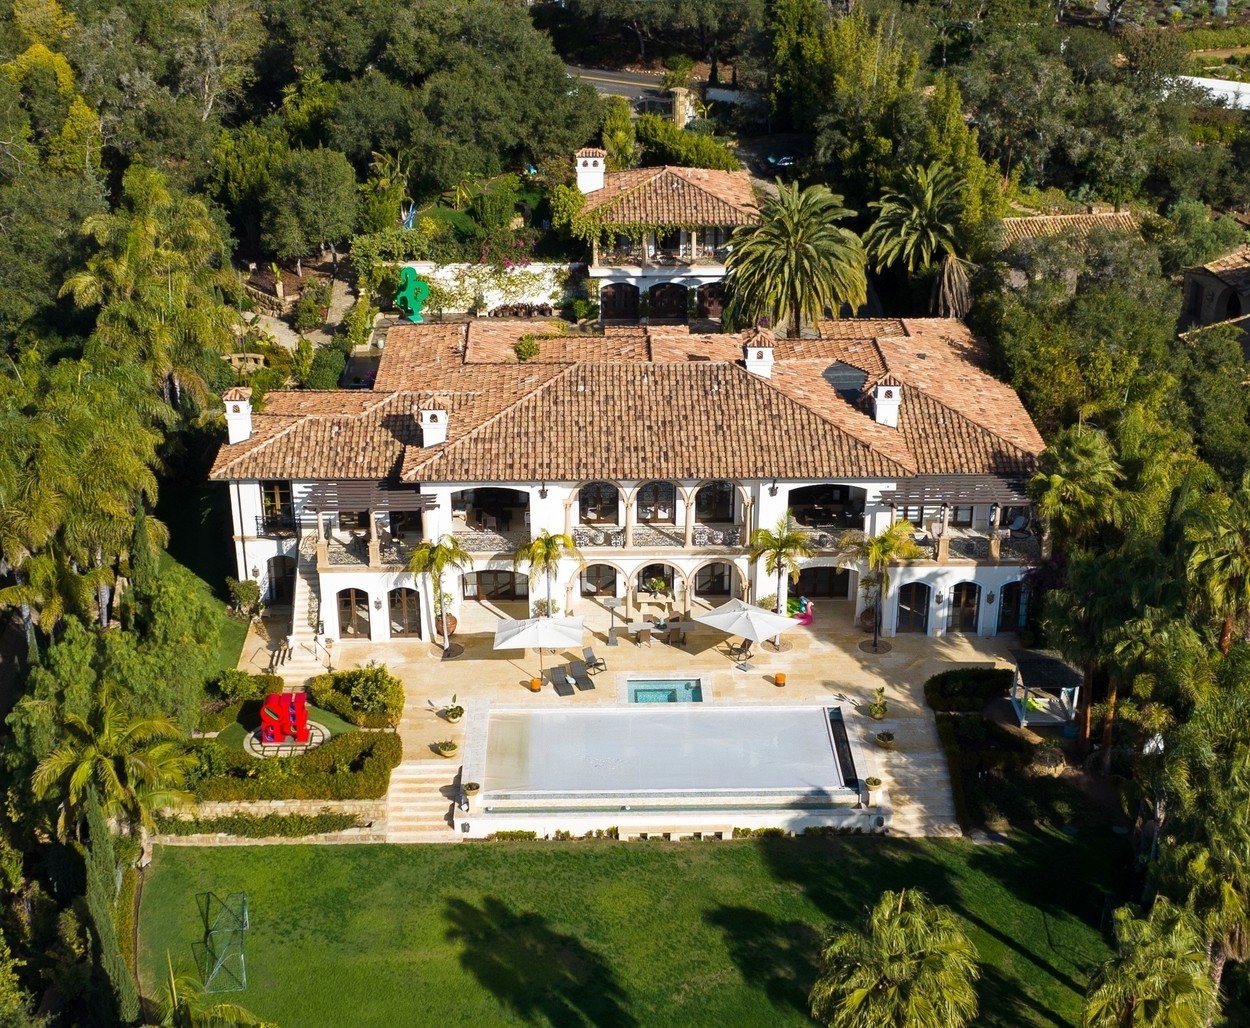 Montecito birtok, ahol Harry és Meghan lakik